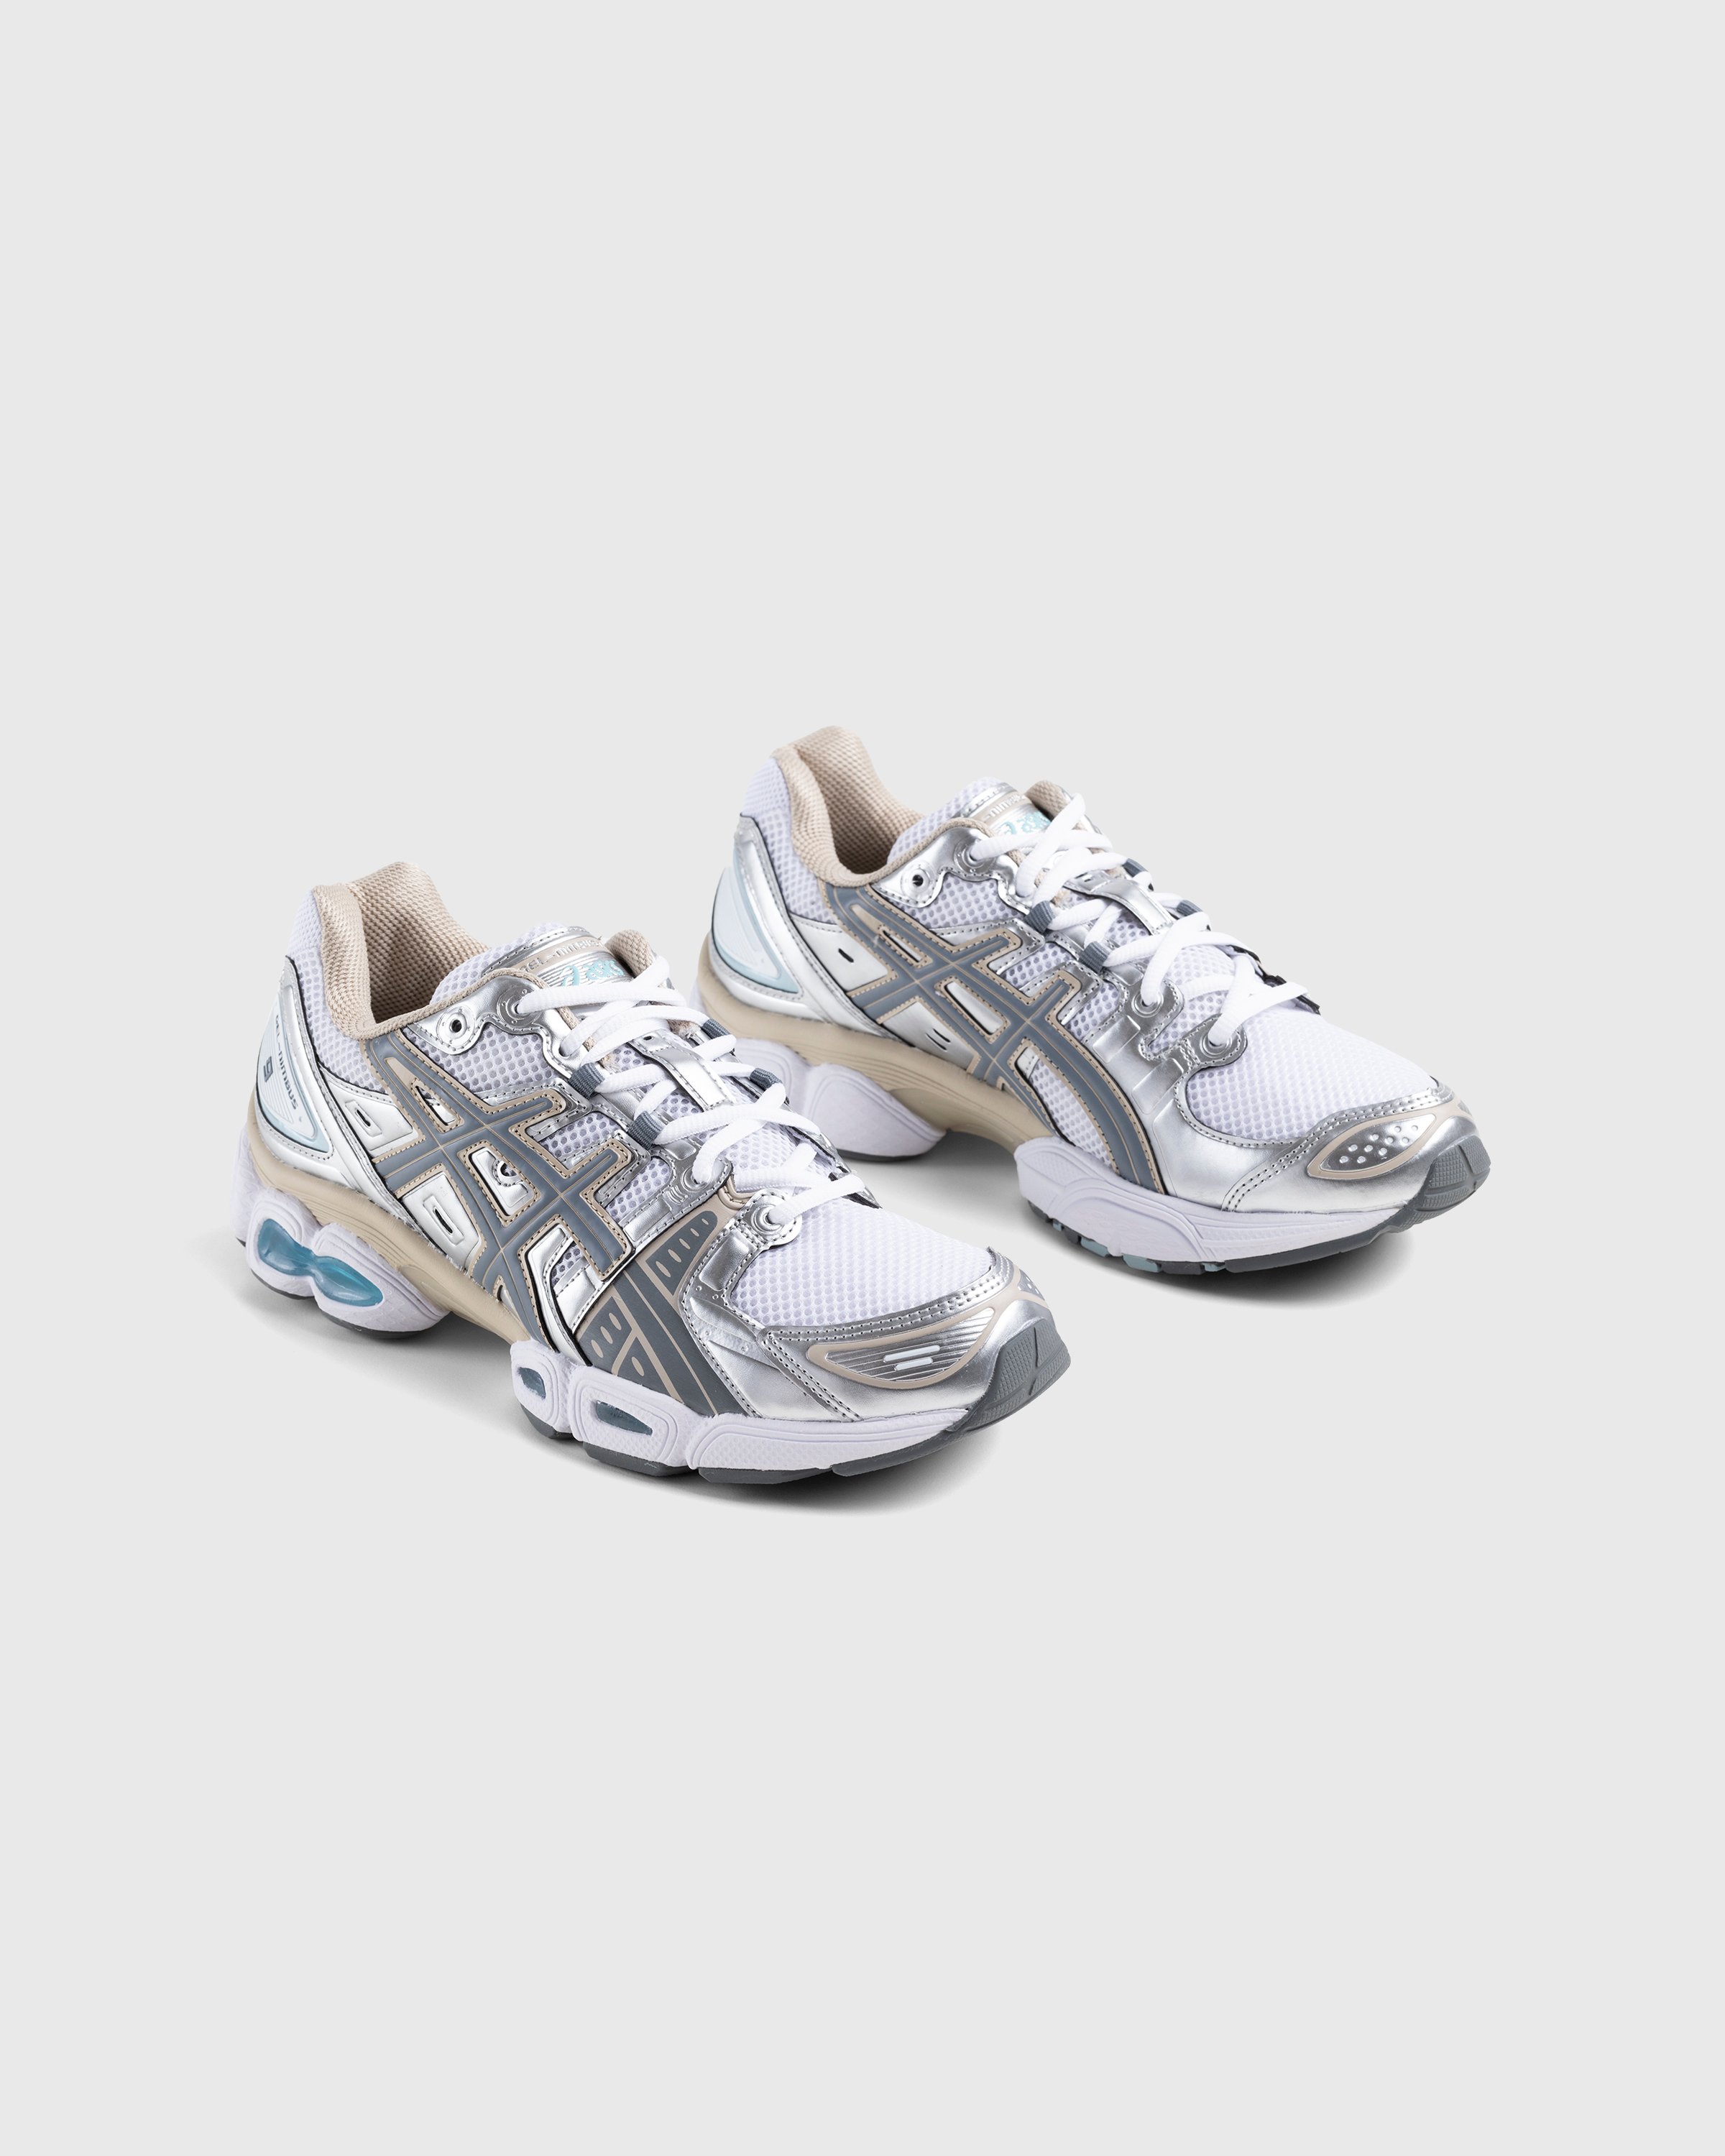 asics - Gel-Nimbus 9 White/Steel Grey - Footwear - White - Image 3